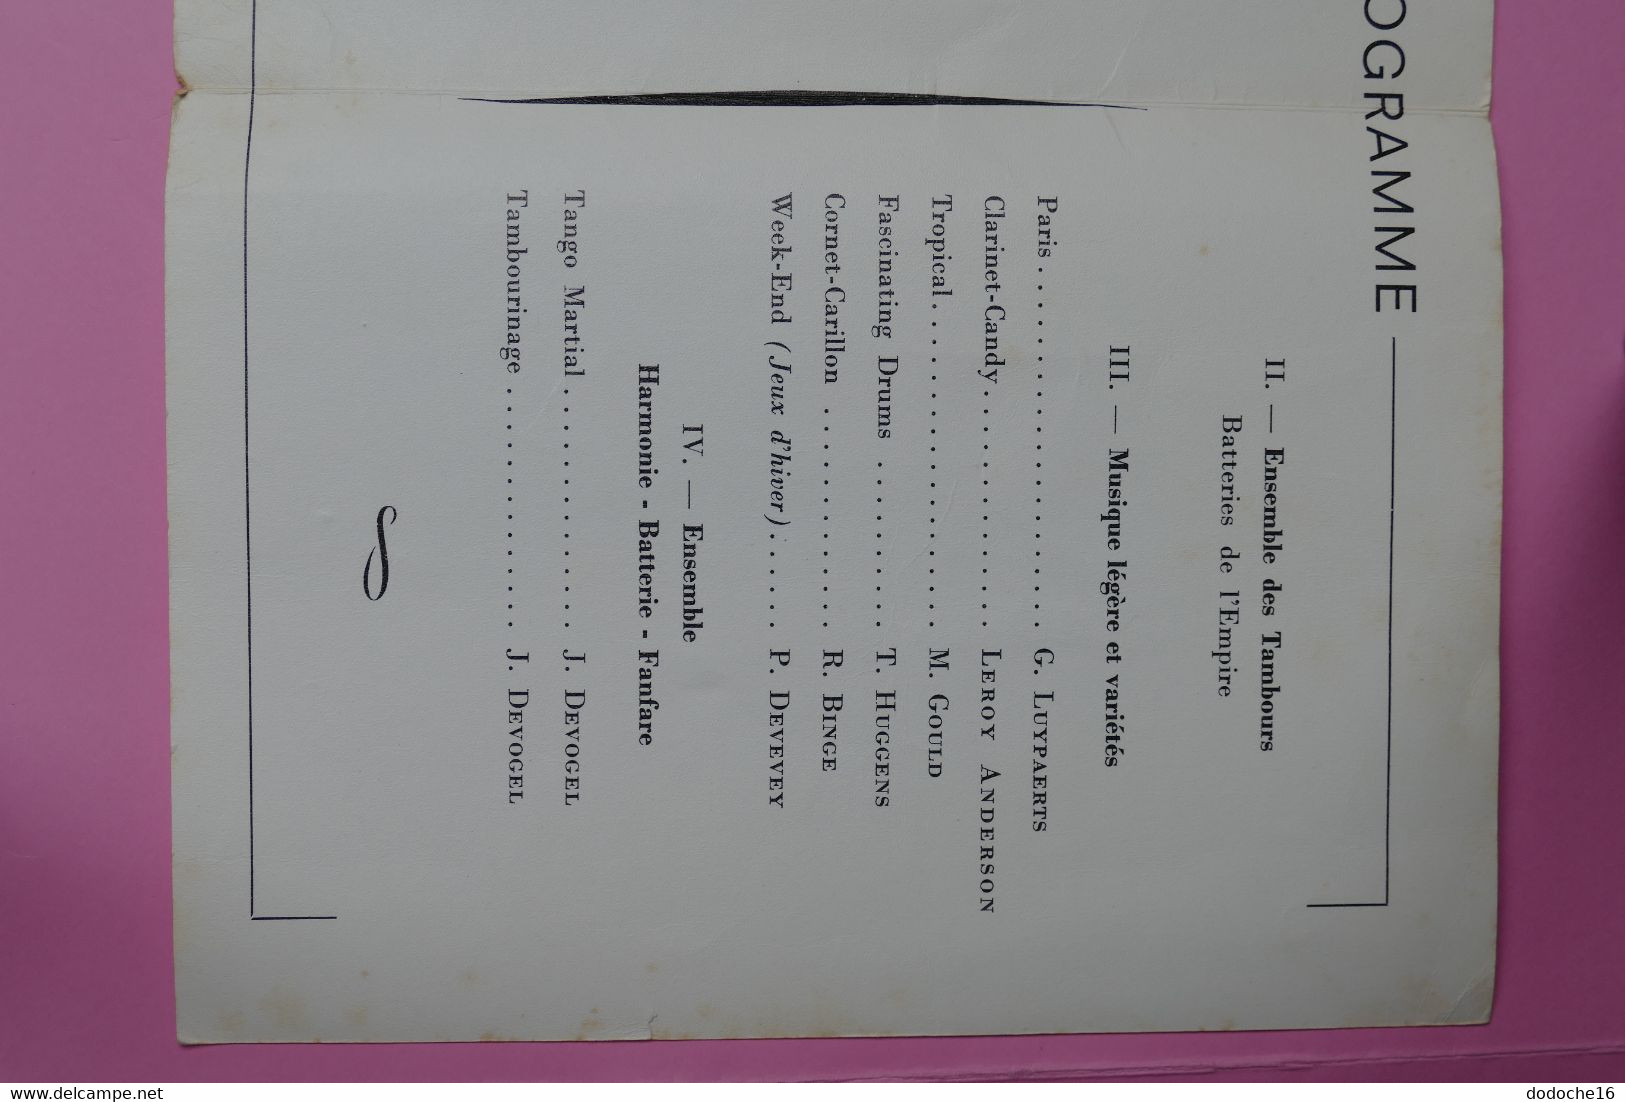 PROGRAMME - Musique De L'Air De Paris - Concerts Des 7 Et 8 Février 1978 - Théâtre Municipal D'Issy Les Moulineaux - Programmes